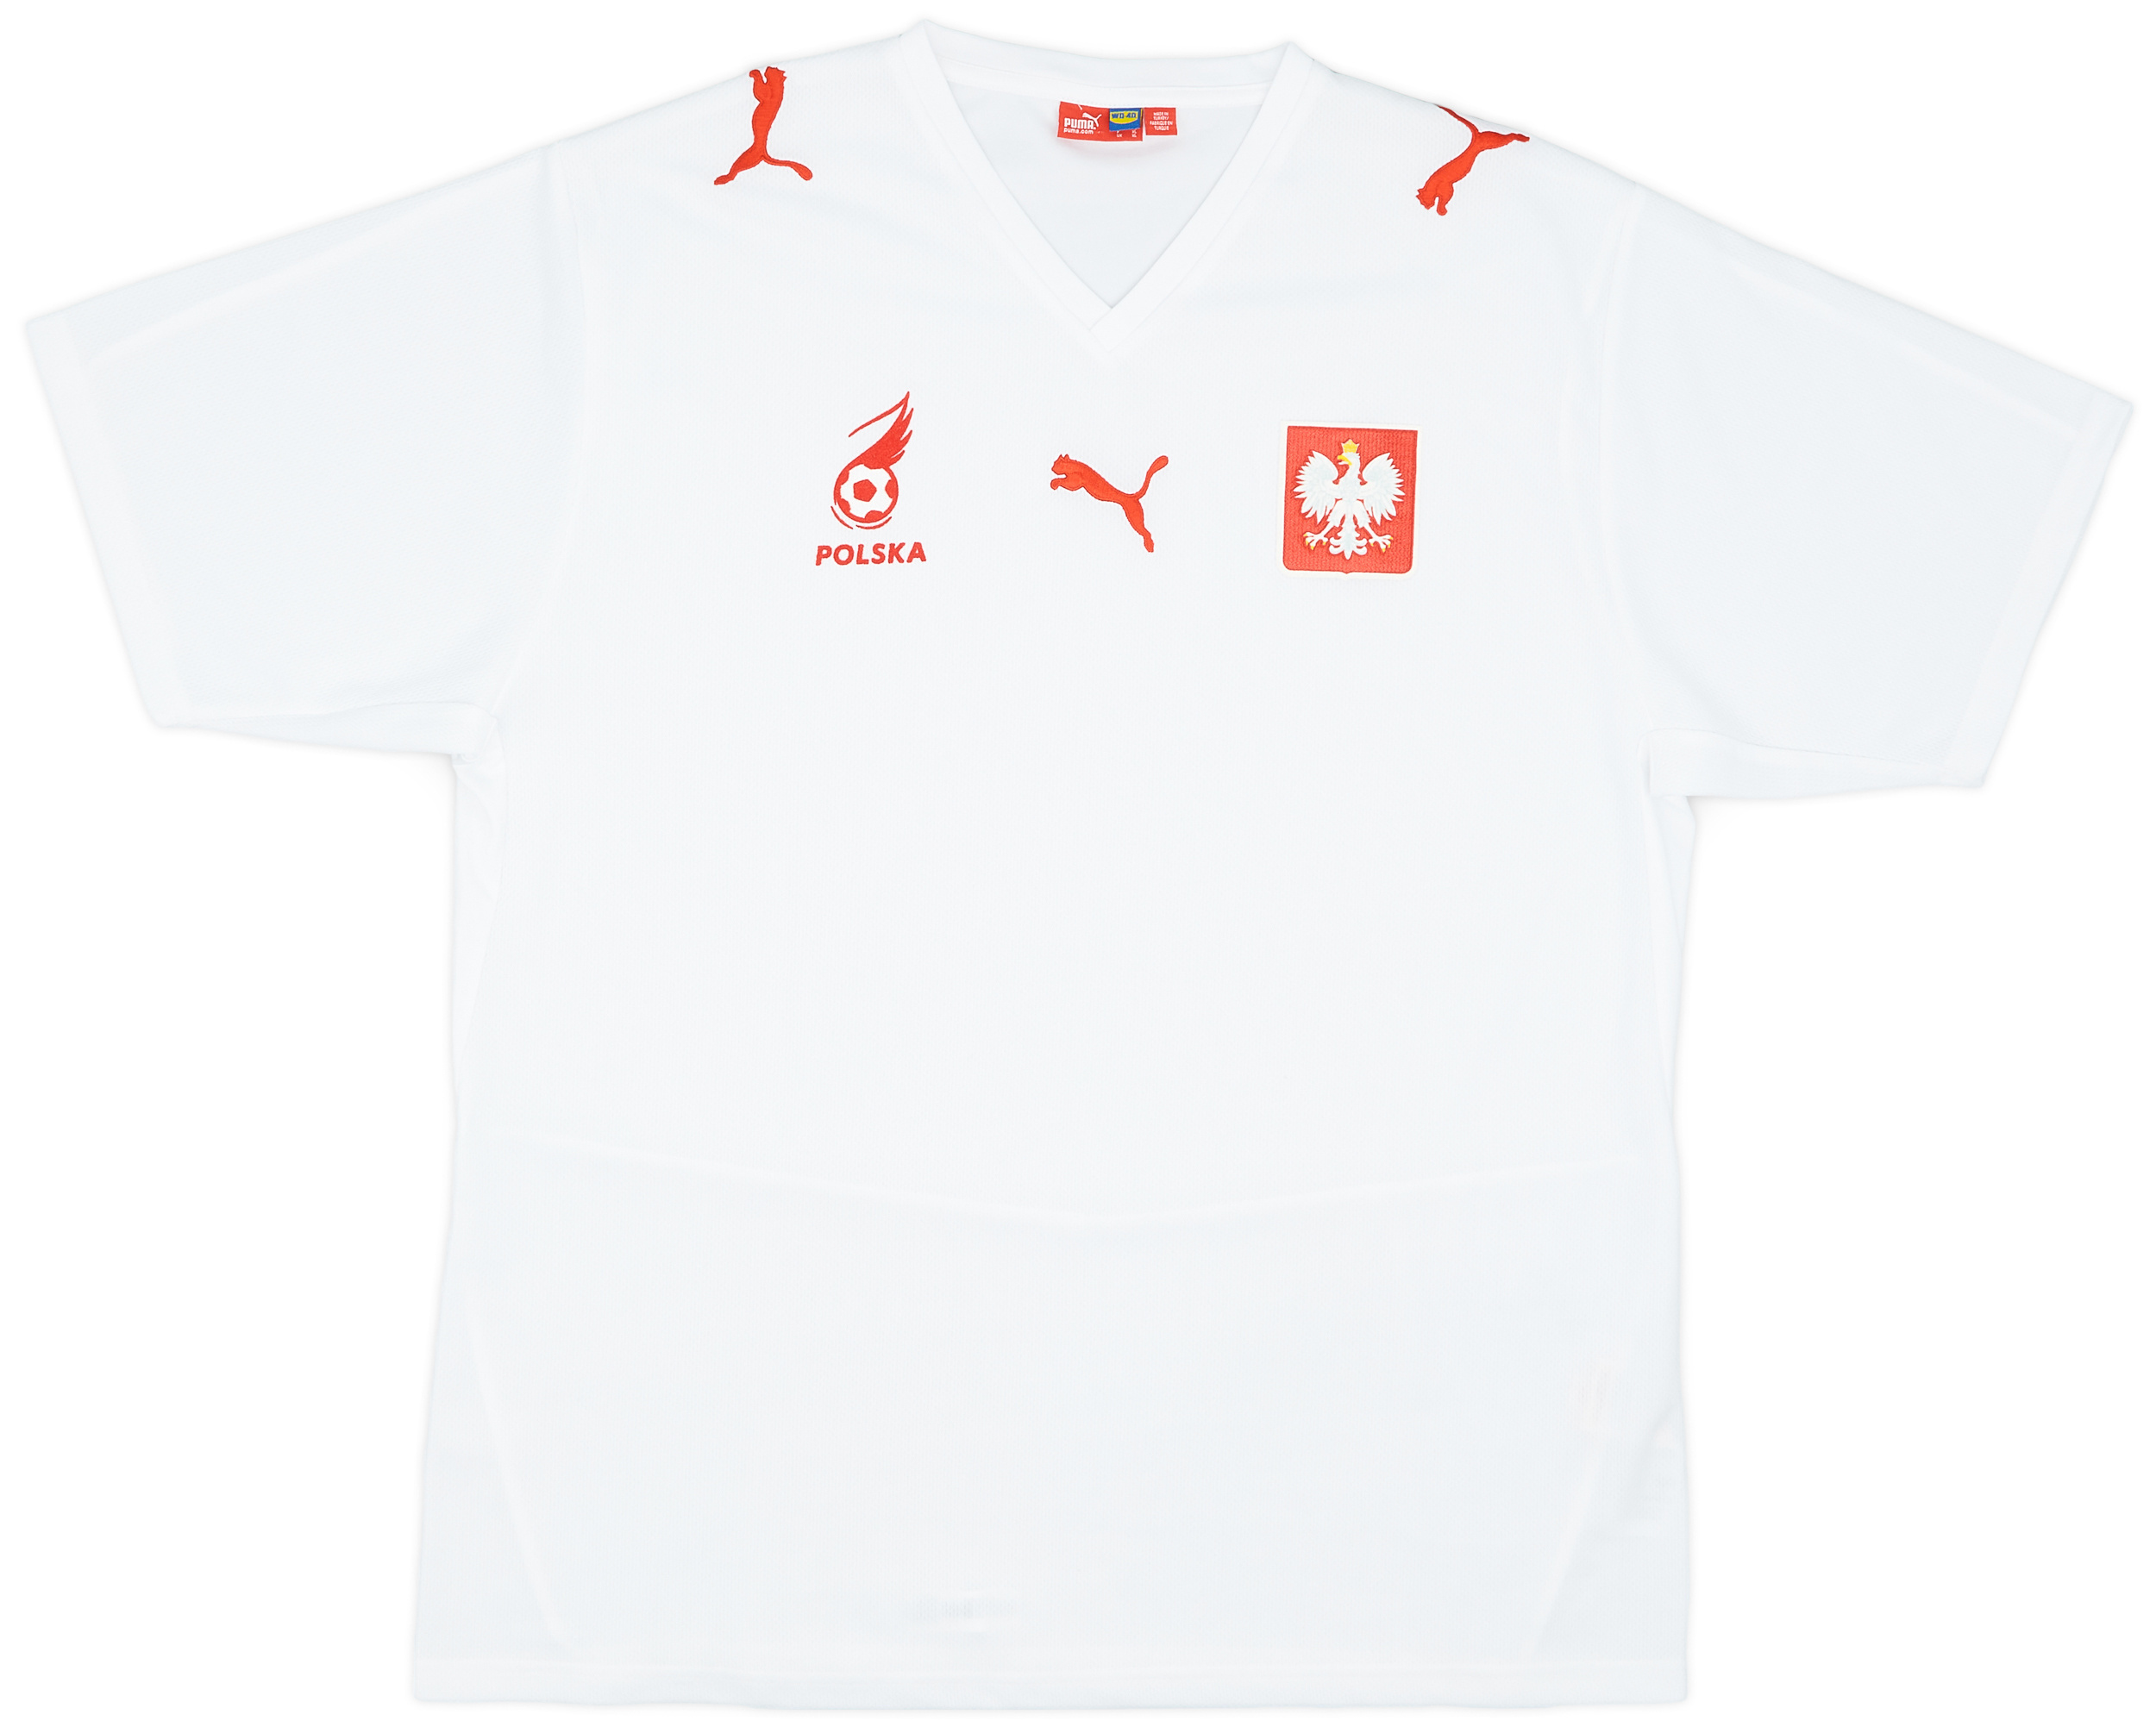 2008 Poland Home Shirt - 10/10 - ()